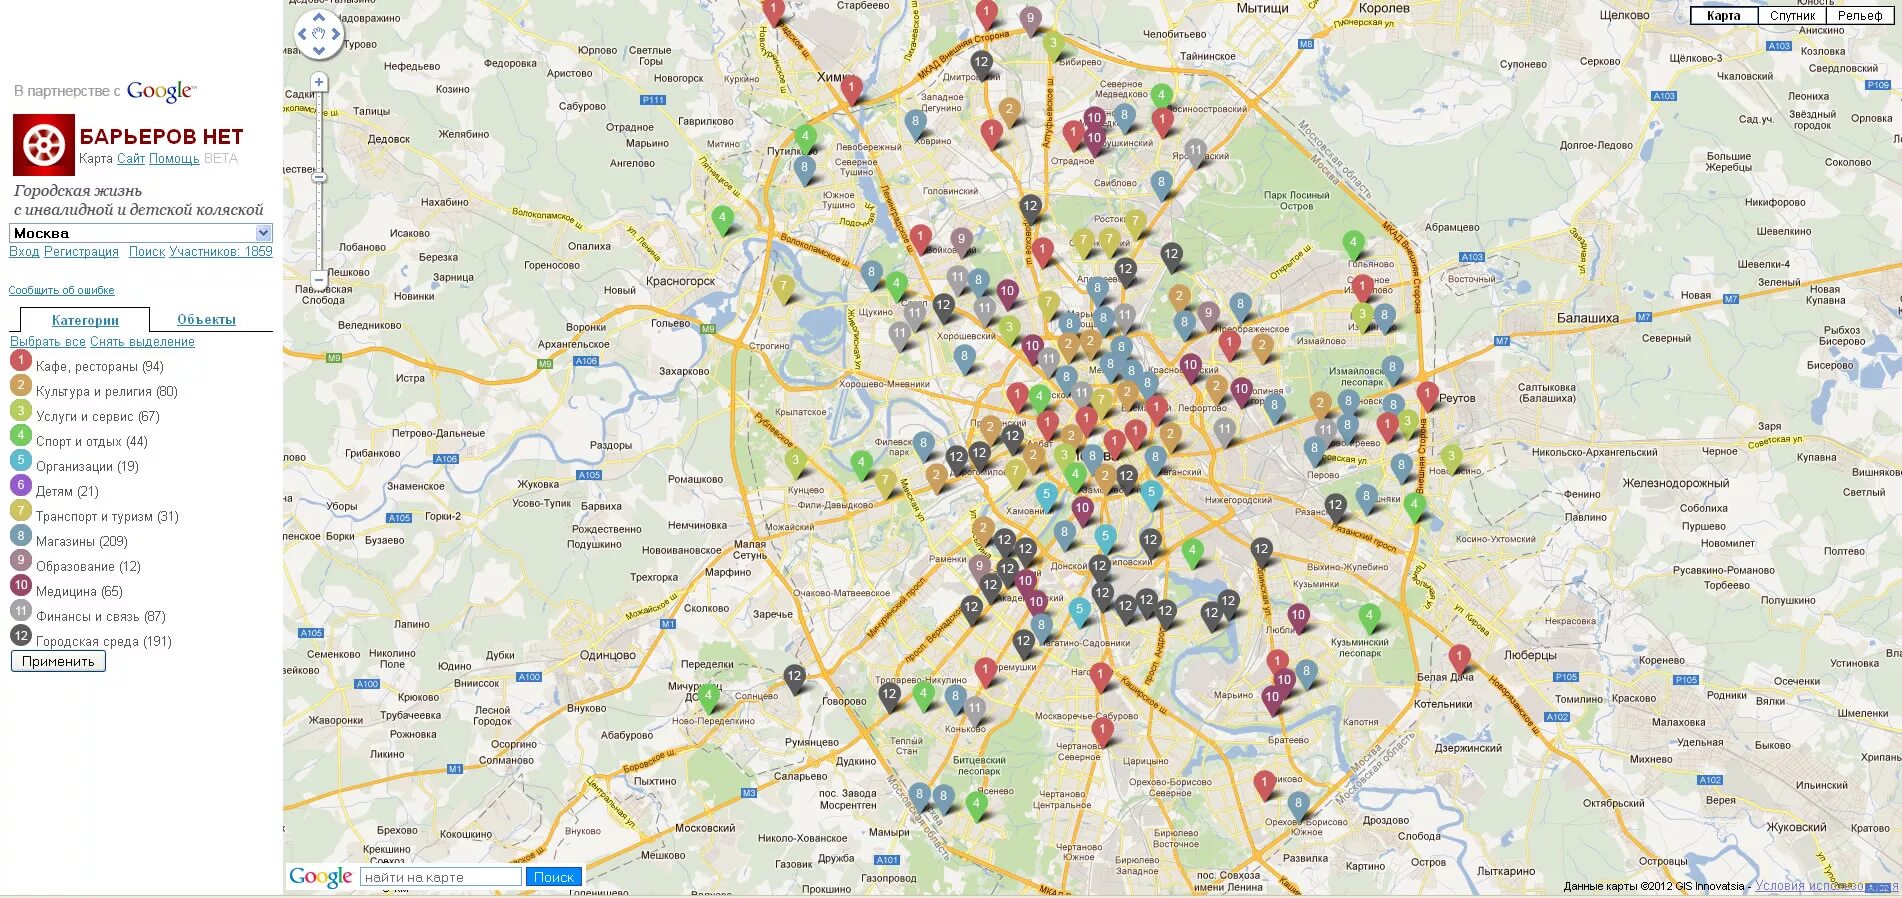 Карта центра Москвы с улицами. Карта Москвы с достопримечательностями. Музеи Москвы на карте. Карта центра Москвы с достопримечательностями.